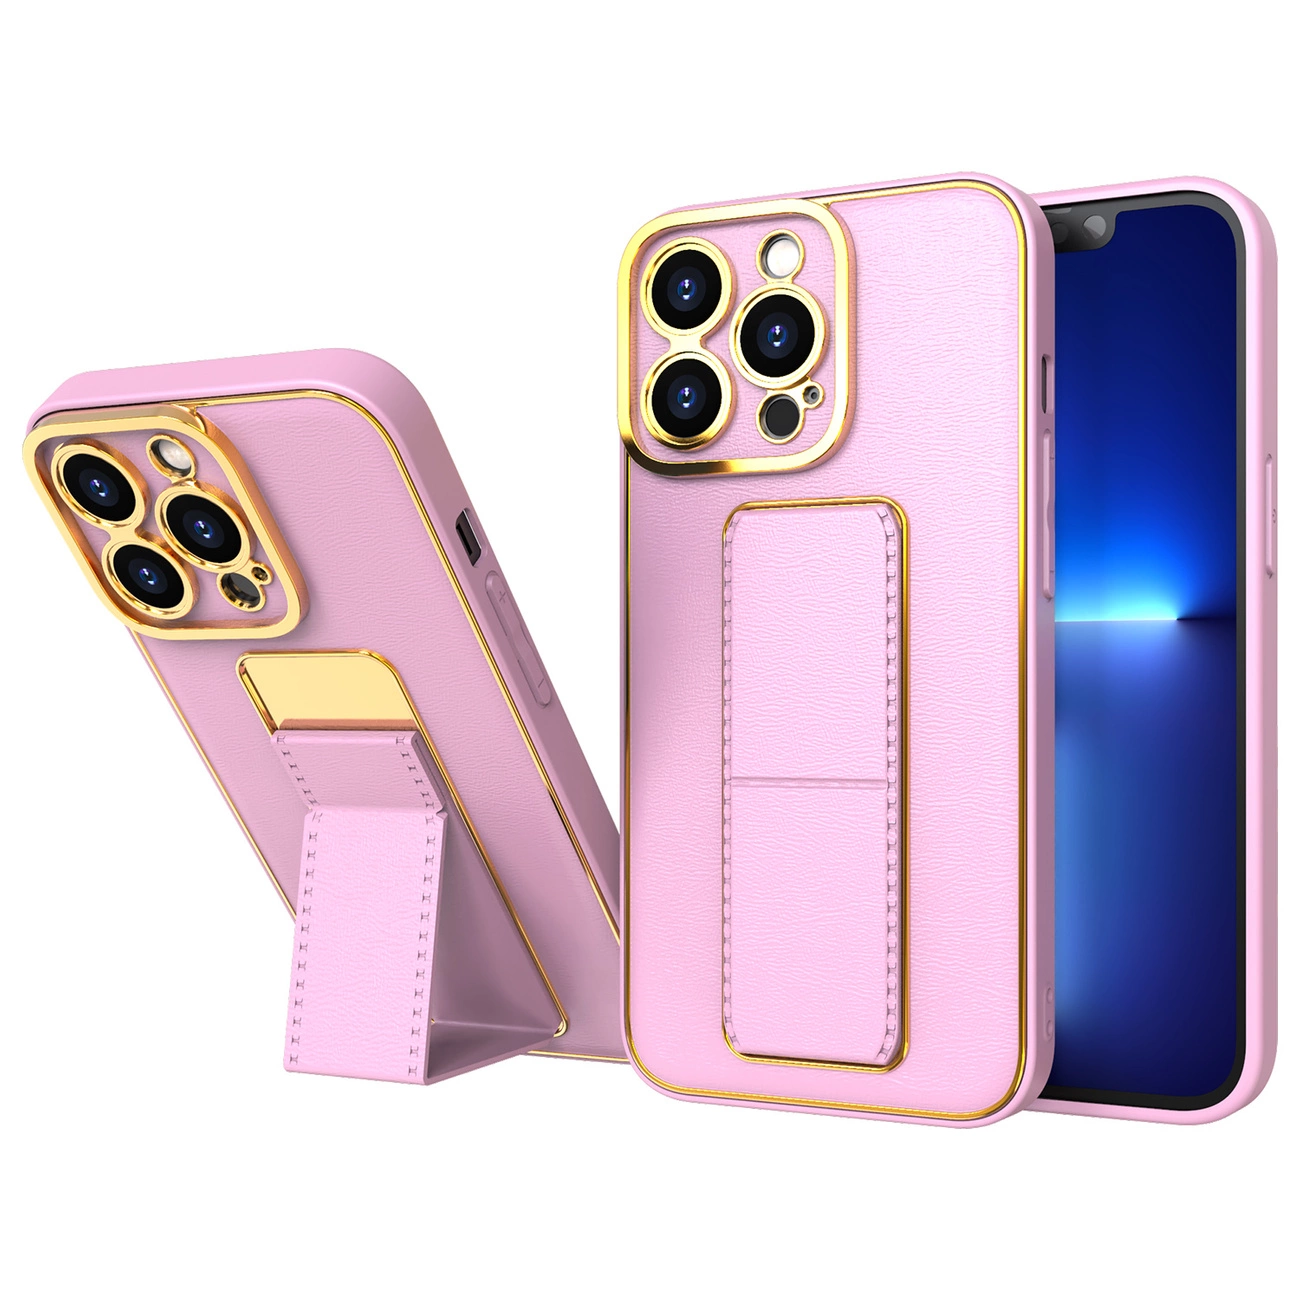 Hurtel Nové pouzdro Kickstand pro iPhone 12 Pro se stojánkem růžové barvy